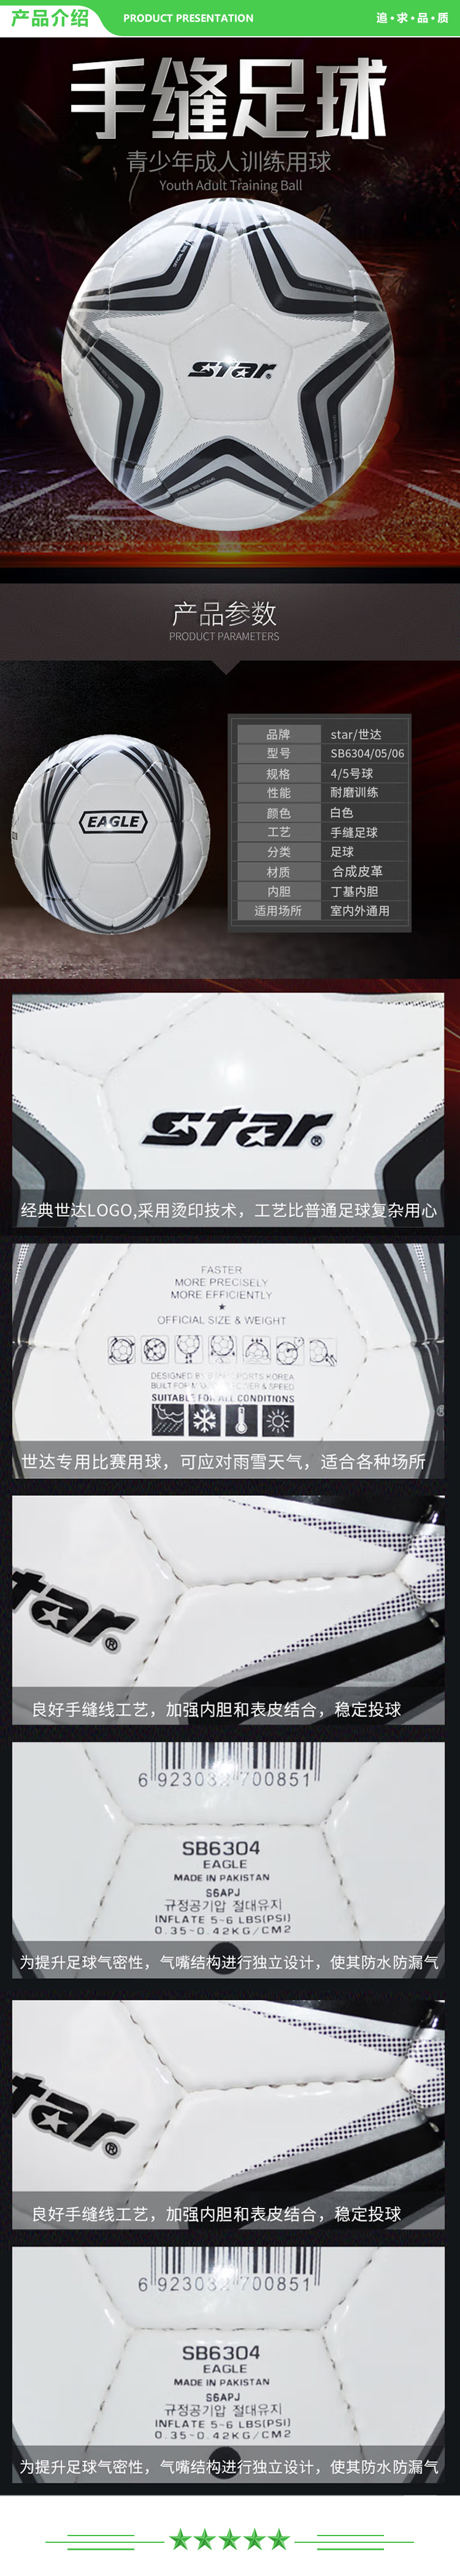 世达 star SB6305 学生足球 耐磨合成皮革青少年训练娱乐用手缝足球  2.jpg